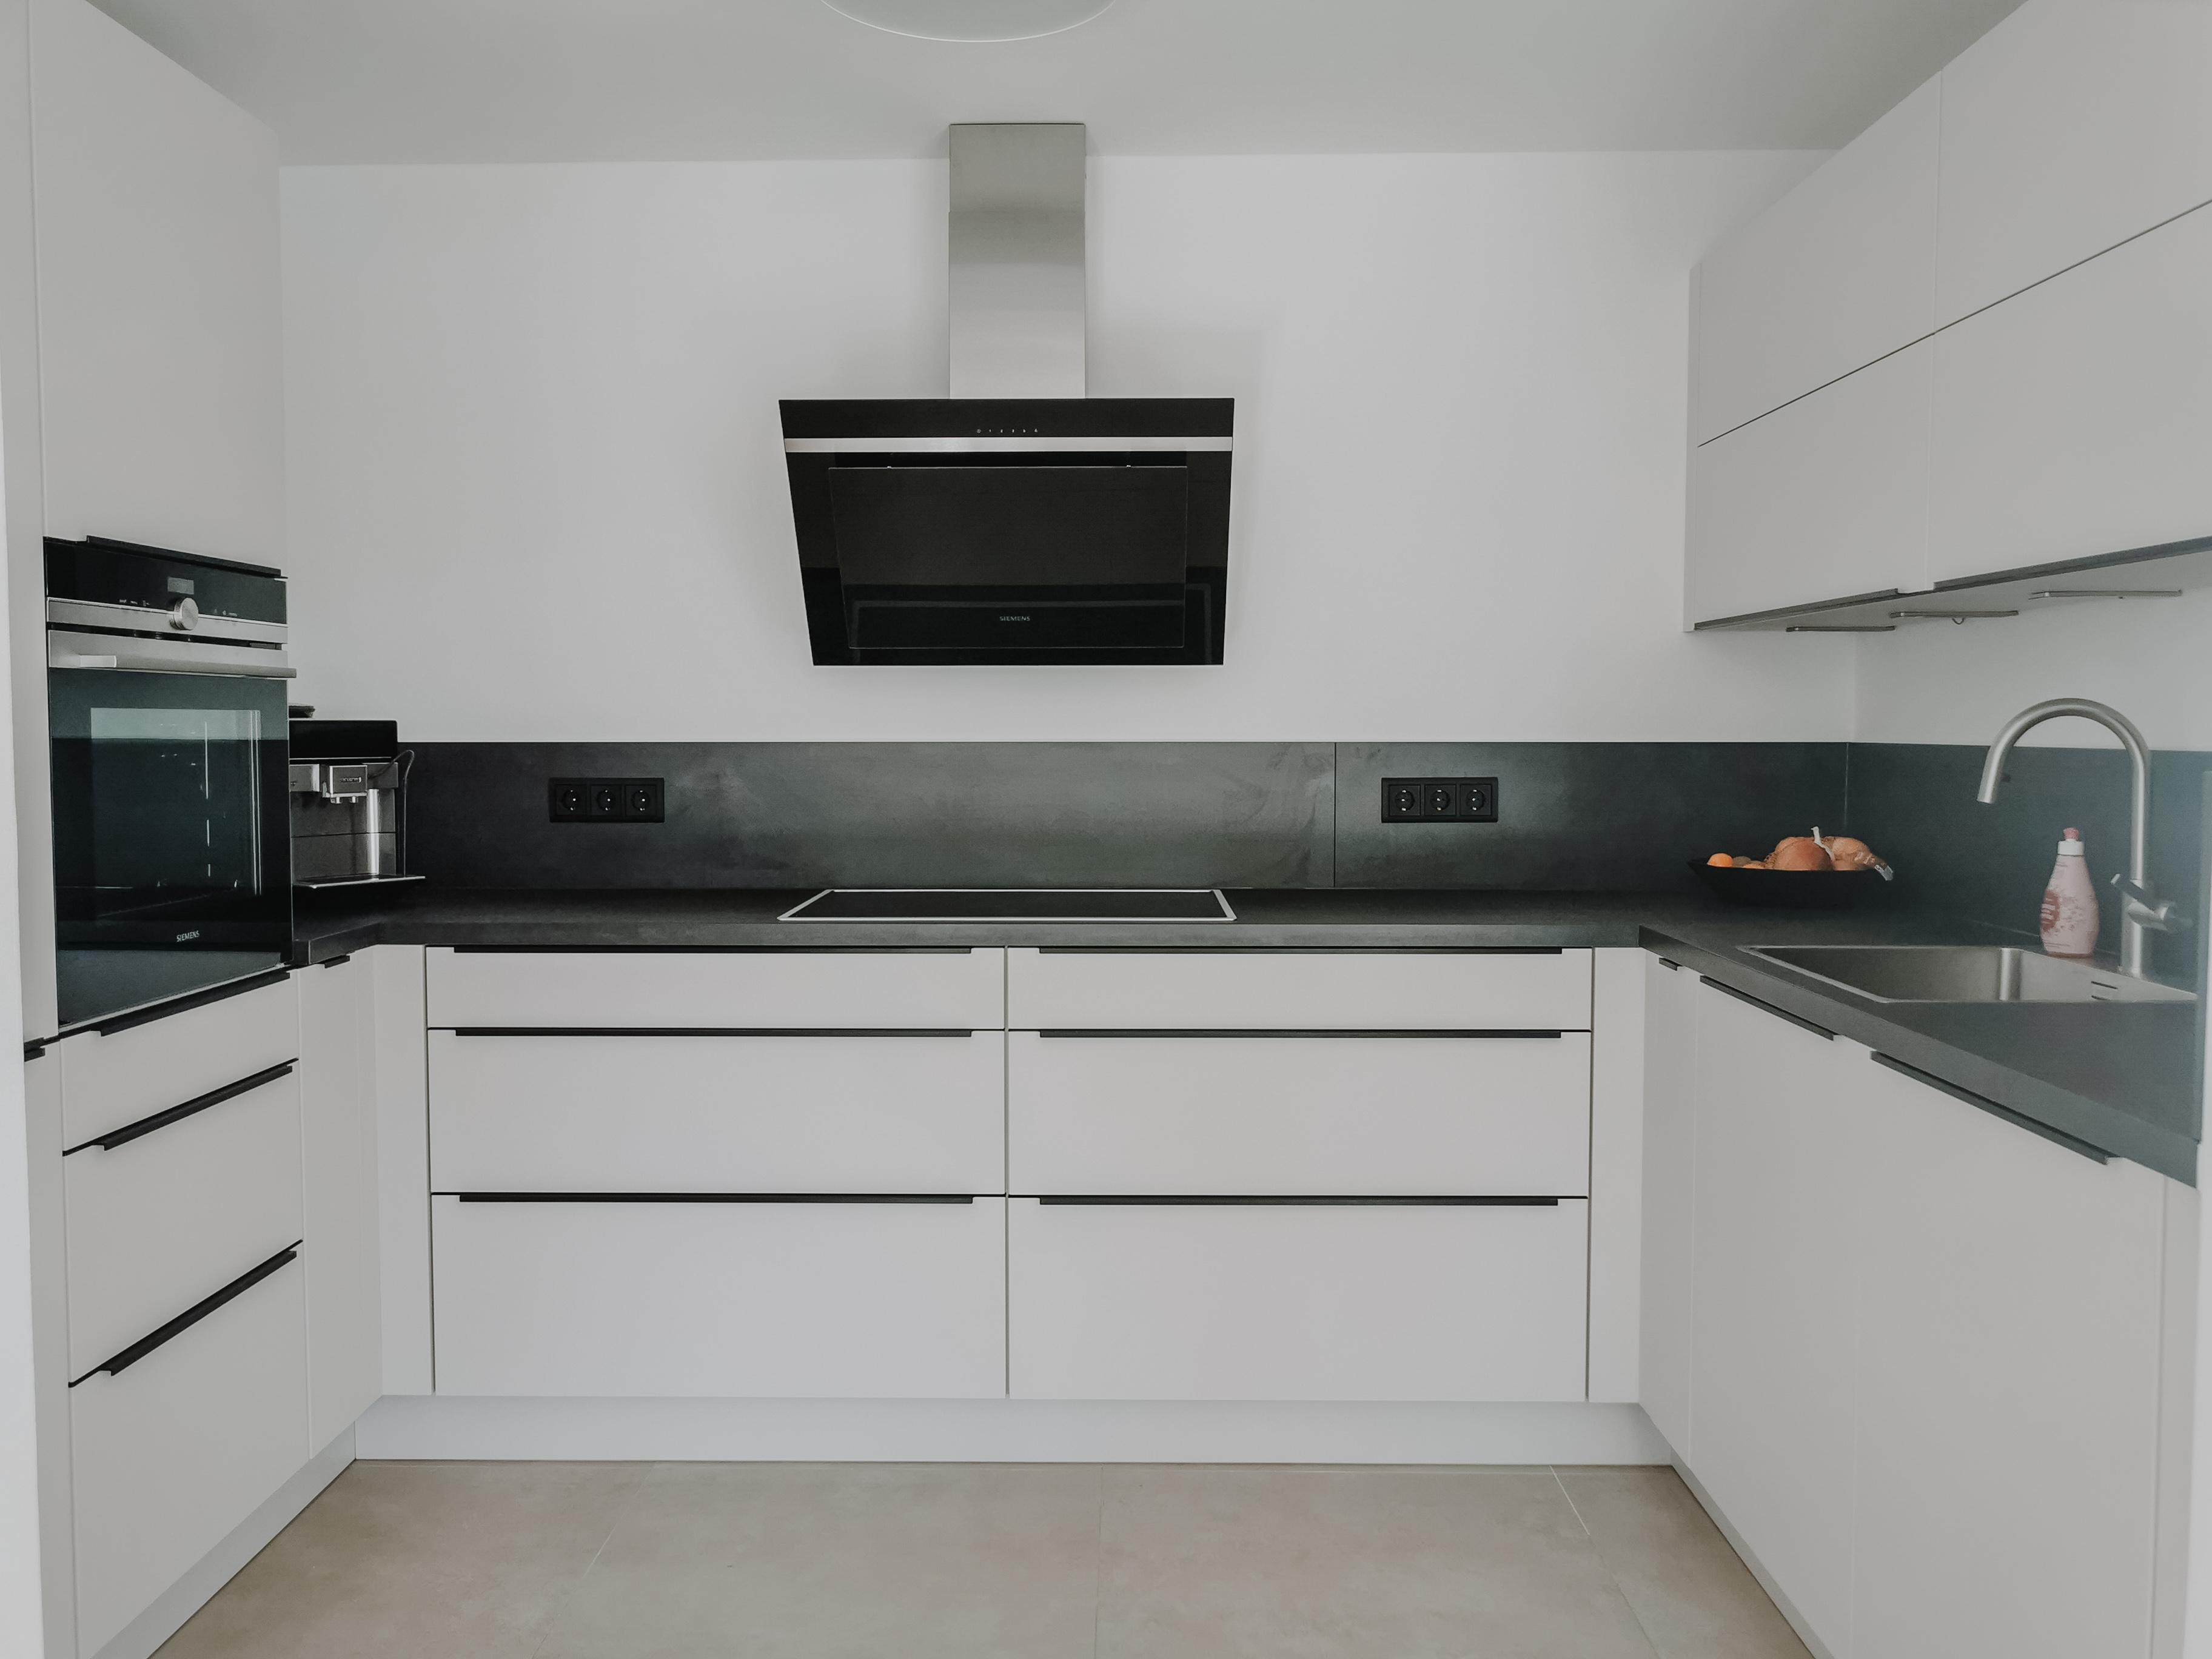 Küche halb offen in seidengrau matt mit schwarzen Griffleisten 🥰

#küchenliebe
#livingchallenge